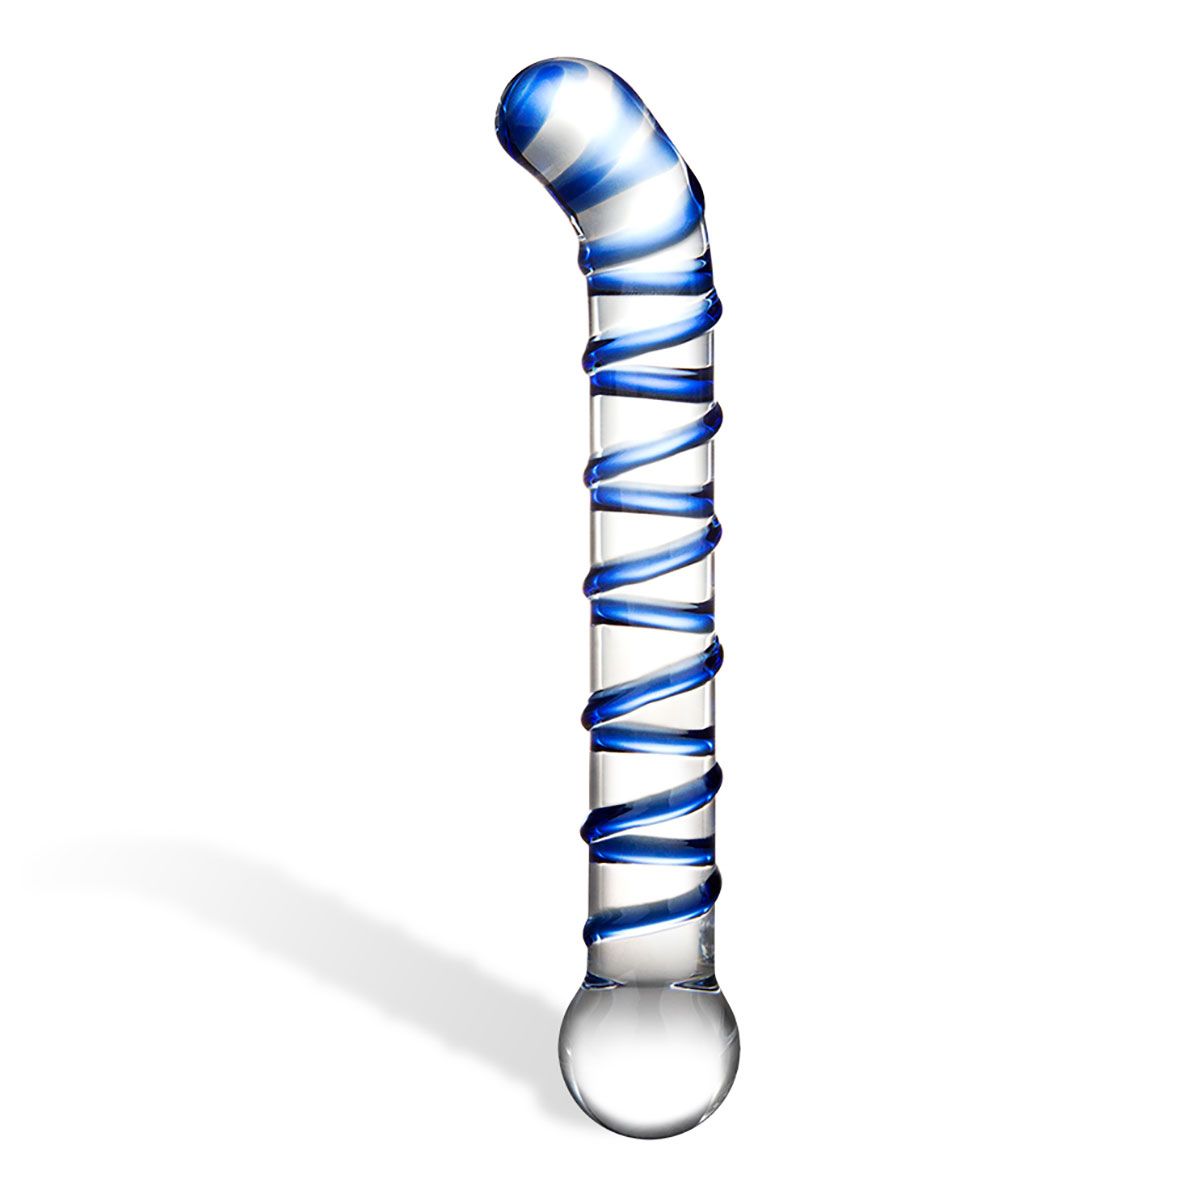 Mr. Swirly изготовлен из боросиликатного стекла. Стильный дизайн синего и прозрачного стекла приятно удивляет своими изгибами и видом. Mr. Swirly G-Spot Glass Dildo легко подходит для анальной и вагинальной стимуляции.